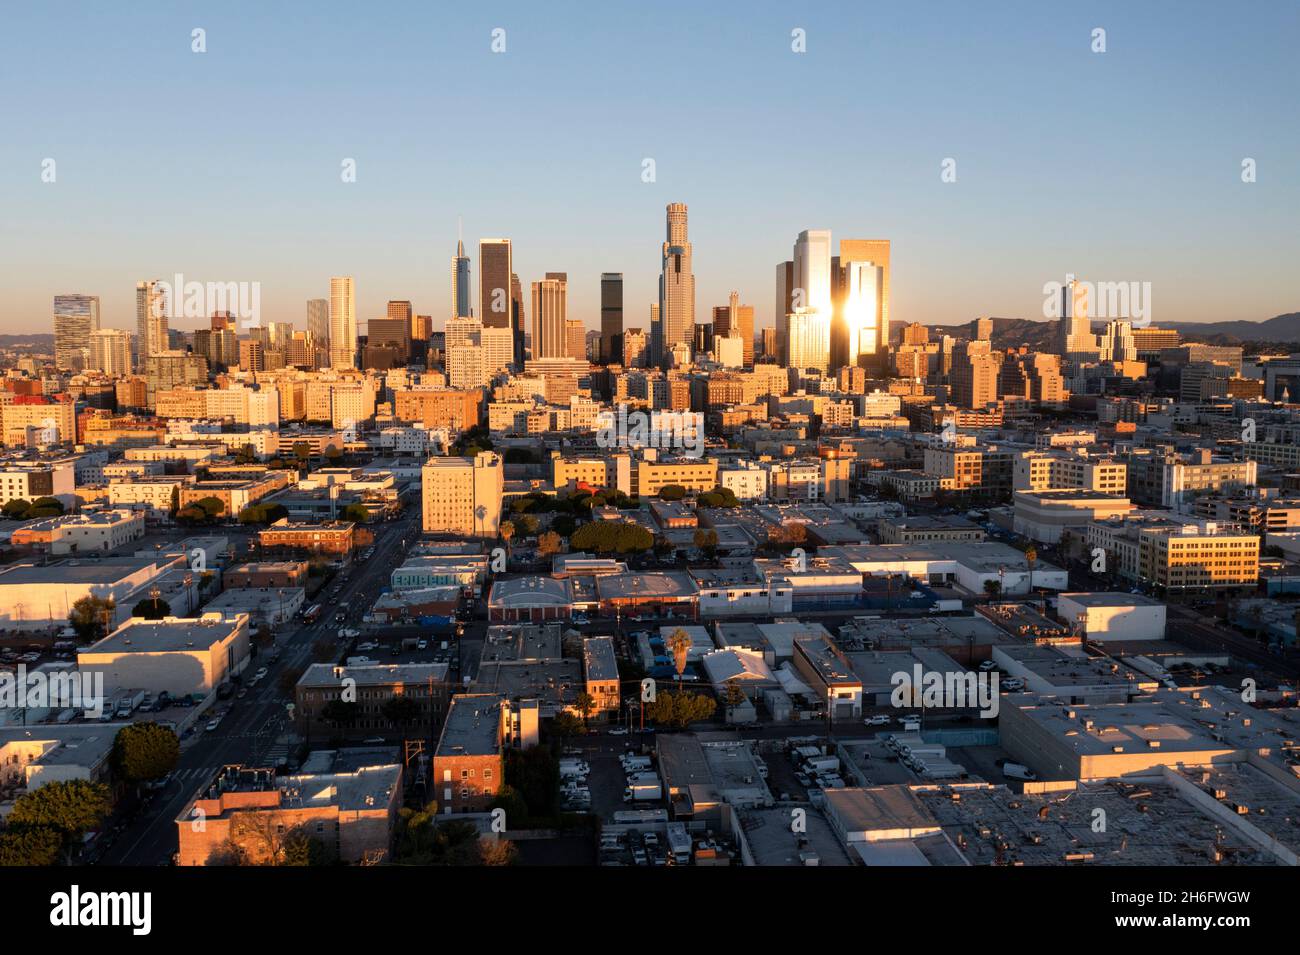 Vista aérea del centro de Los Ángeles bañado por la luz dorada del amanecer Foto de stock